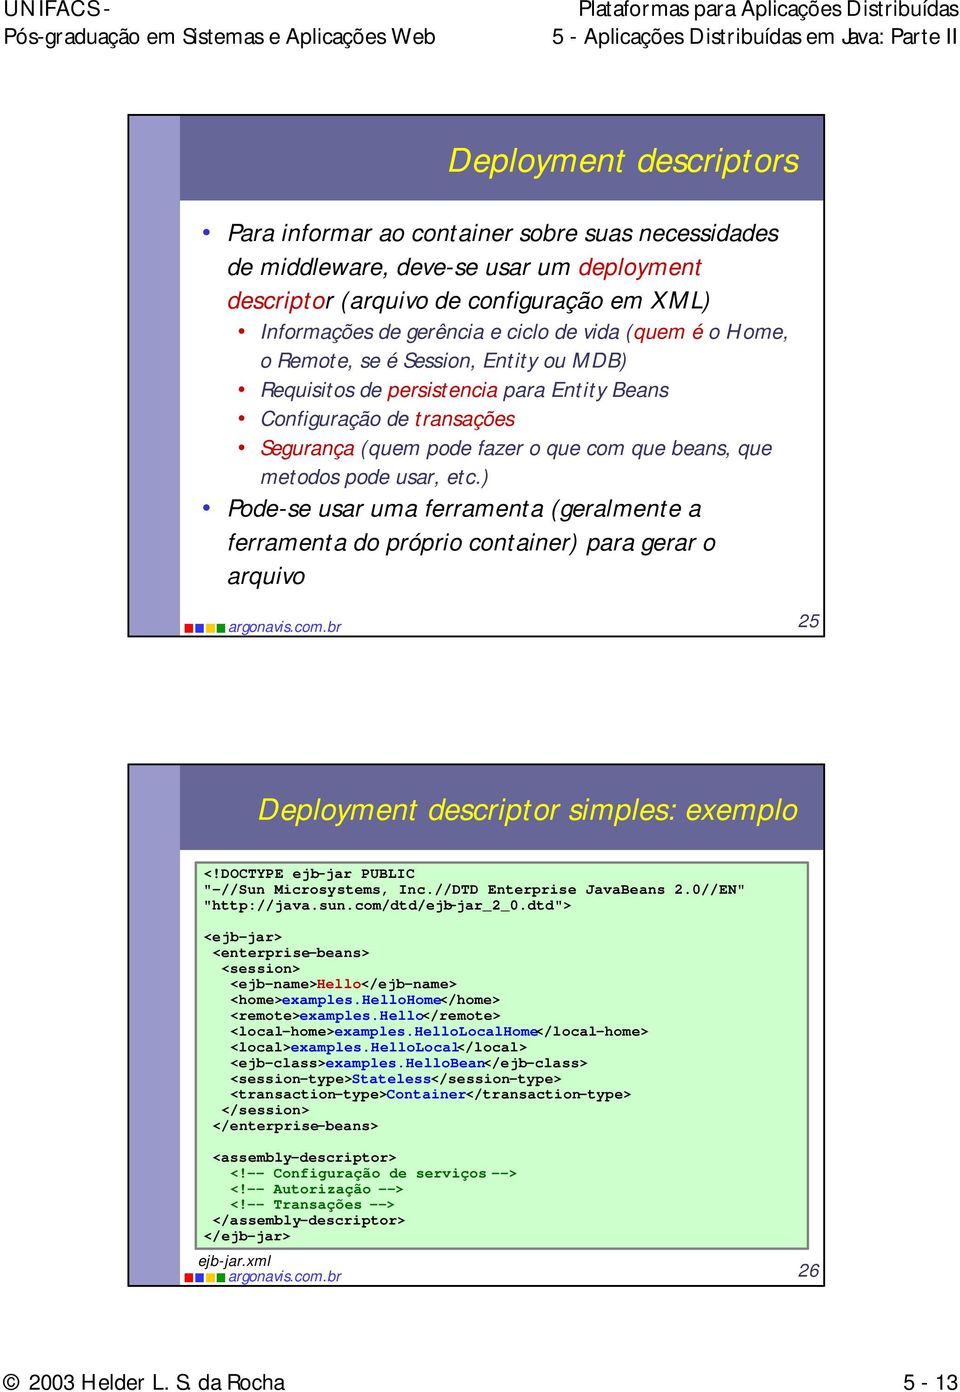 etc.) Pode-se usar uma ferramenta (geralmente a ferramenta do próprio container) para gerar o arquivo 25 Deployment descriptor simples: exemplo <!DOCTYPE ejb-jar PUBLIC "-//Sun Microsystems, Inc.